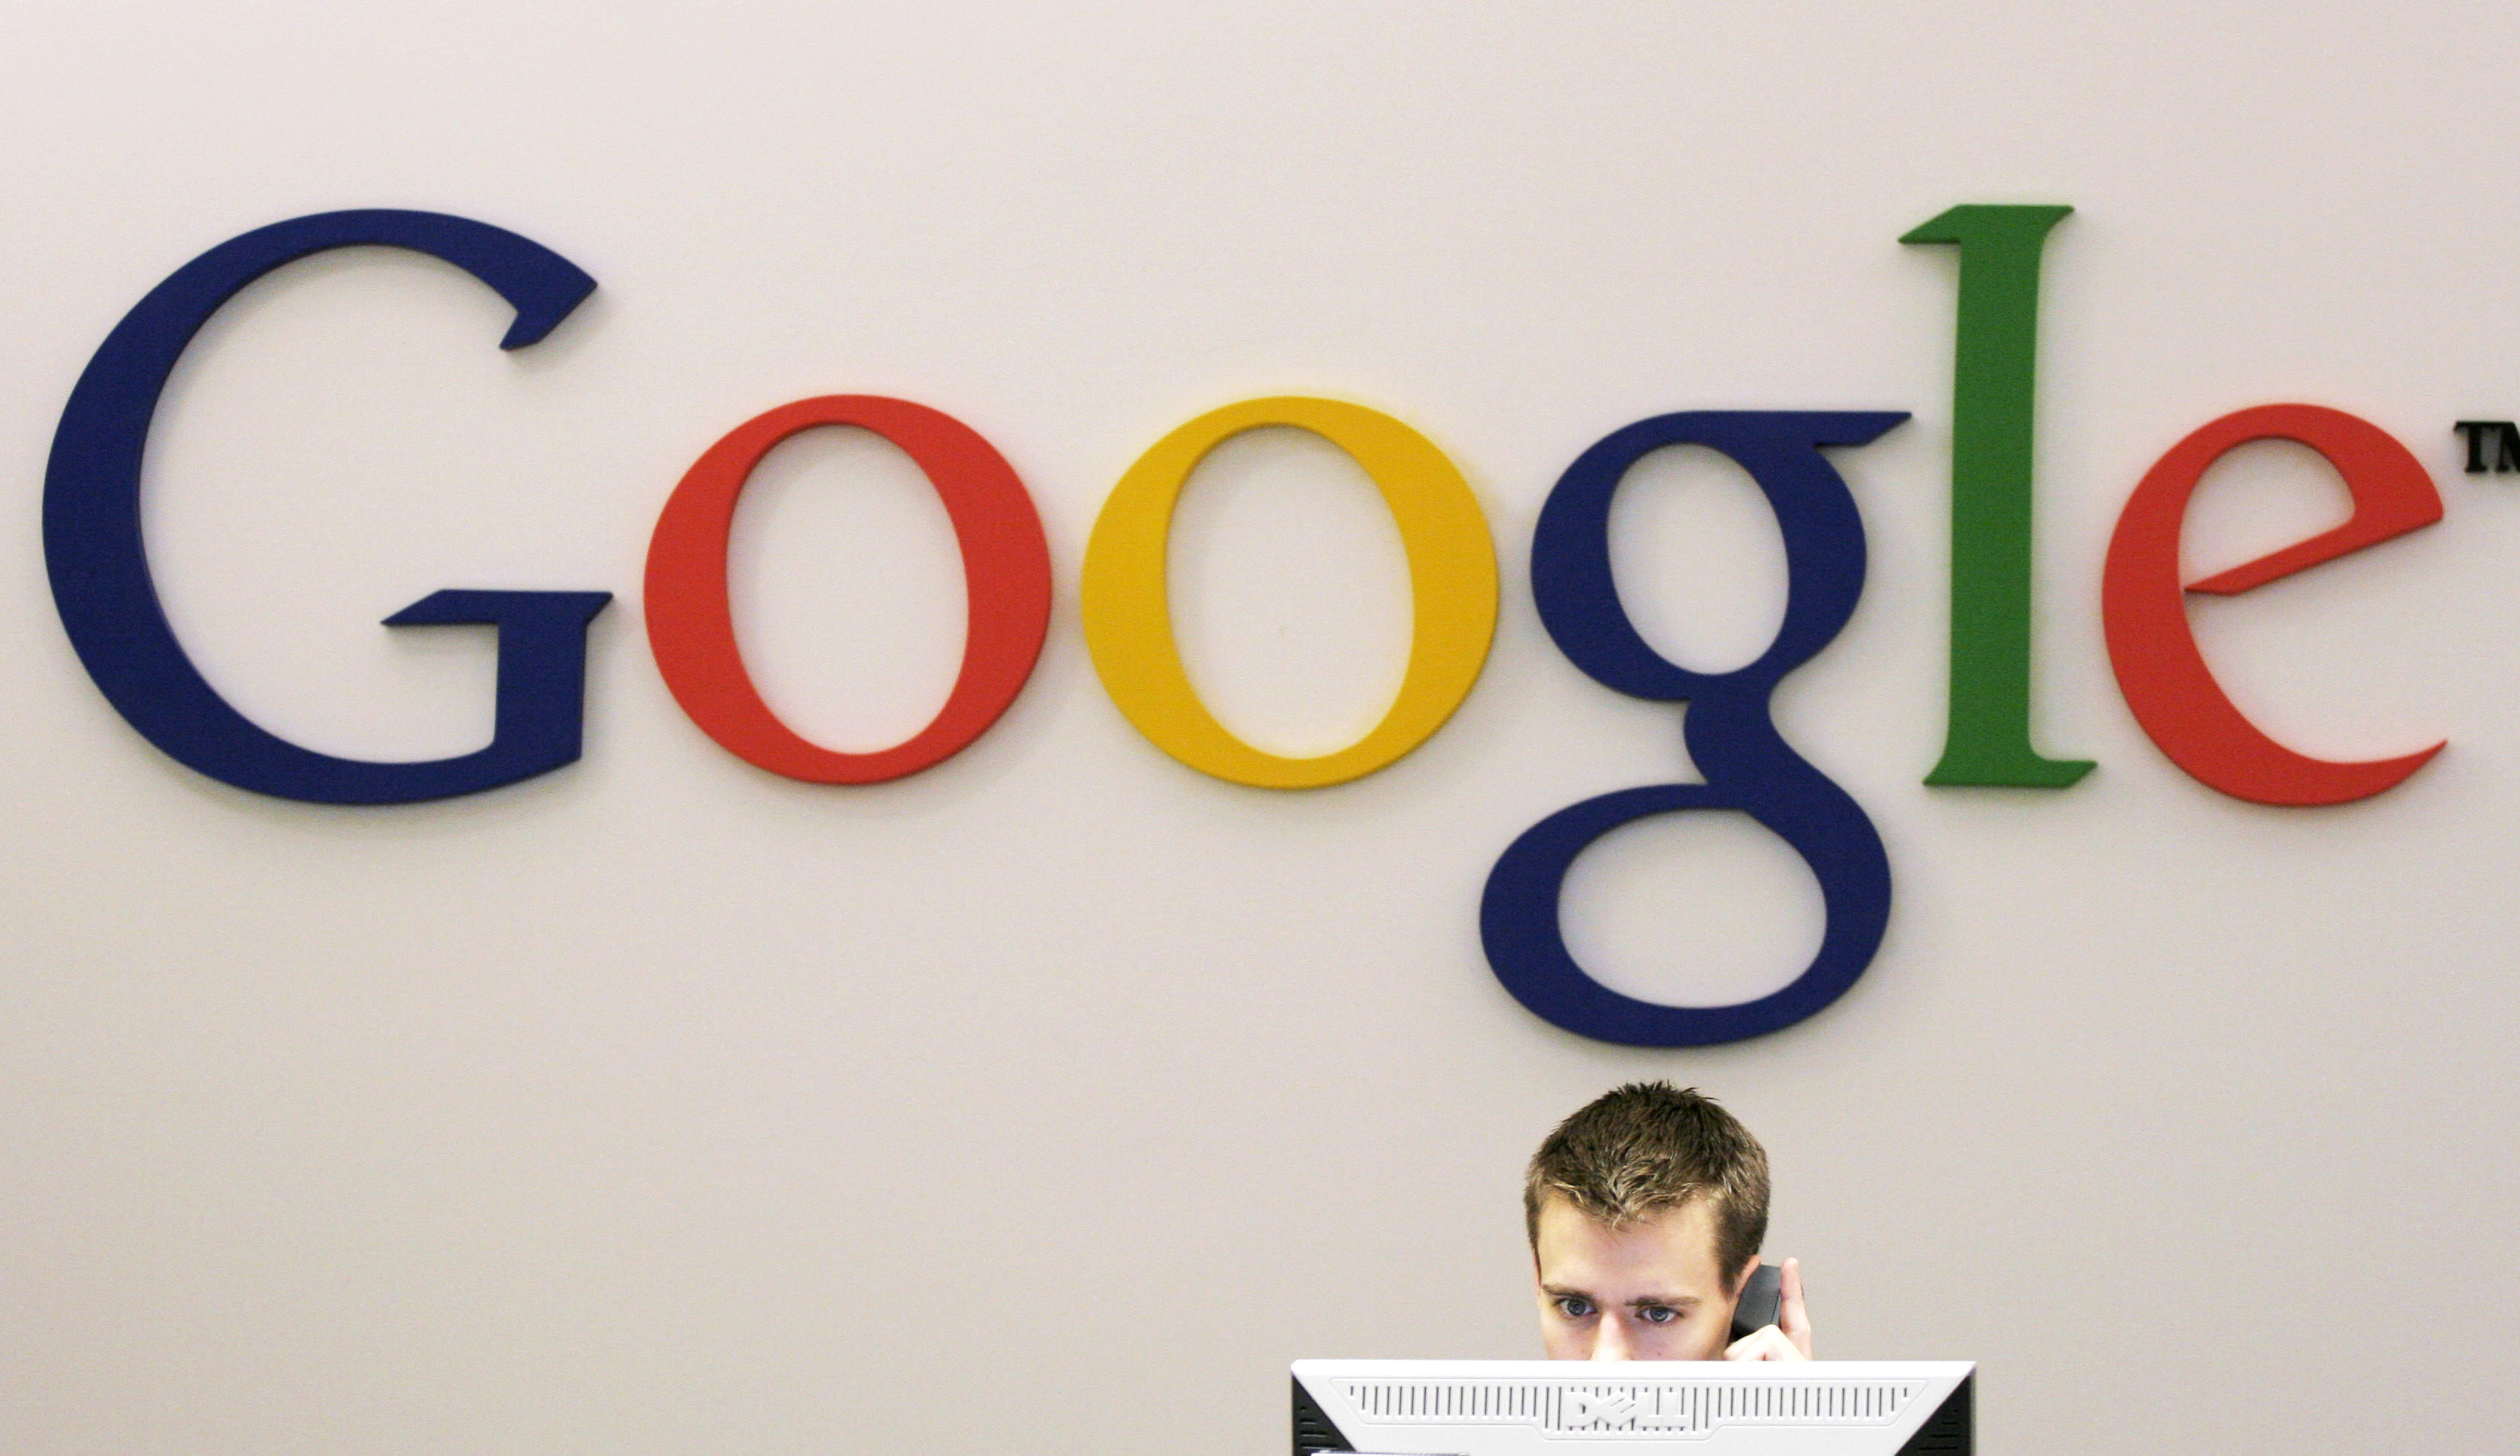 Google Docs kommer att få fler och fler användare tror frilansjournalisten Fredrik Wass.